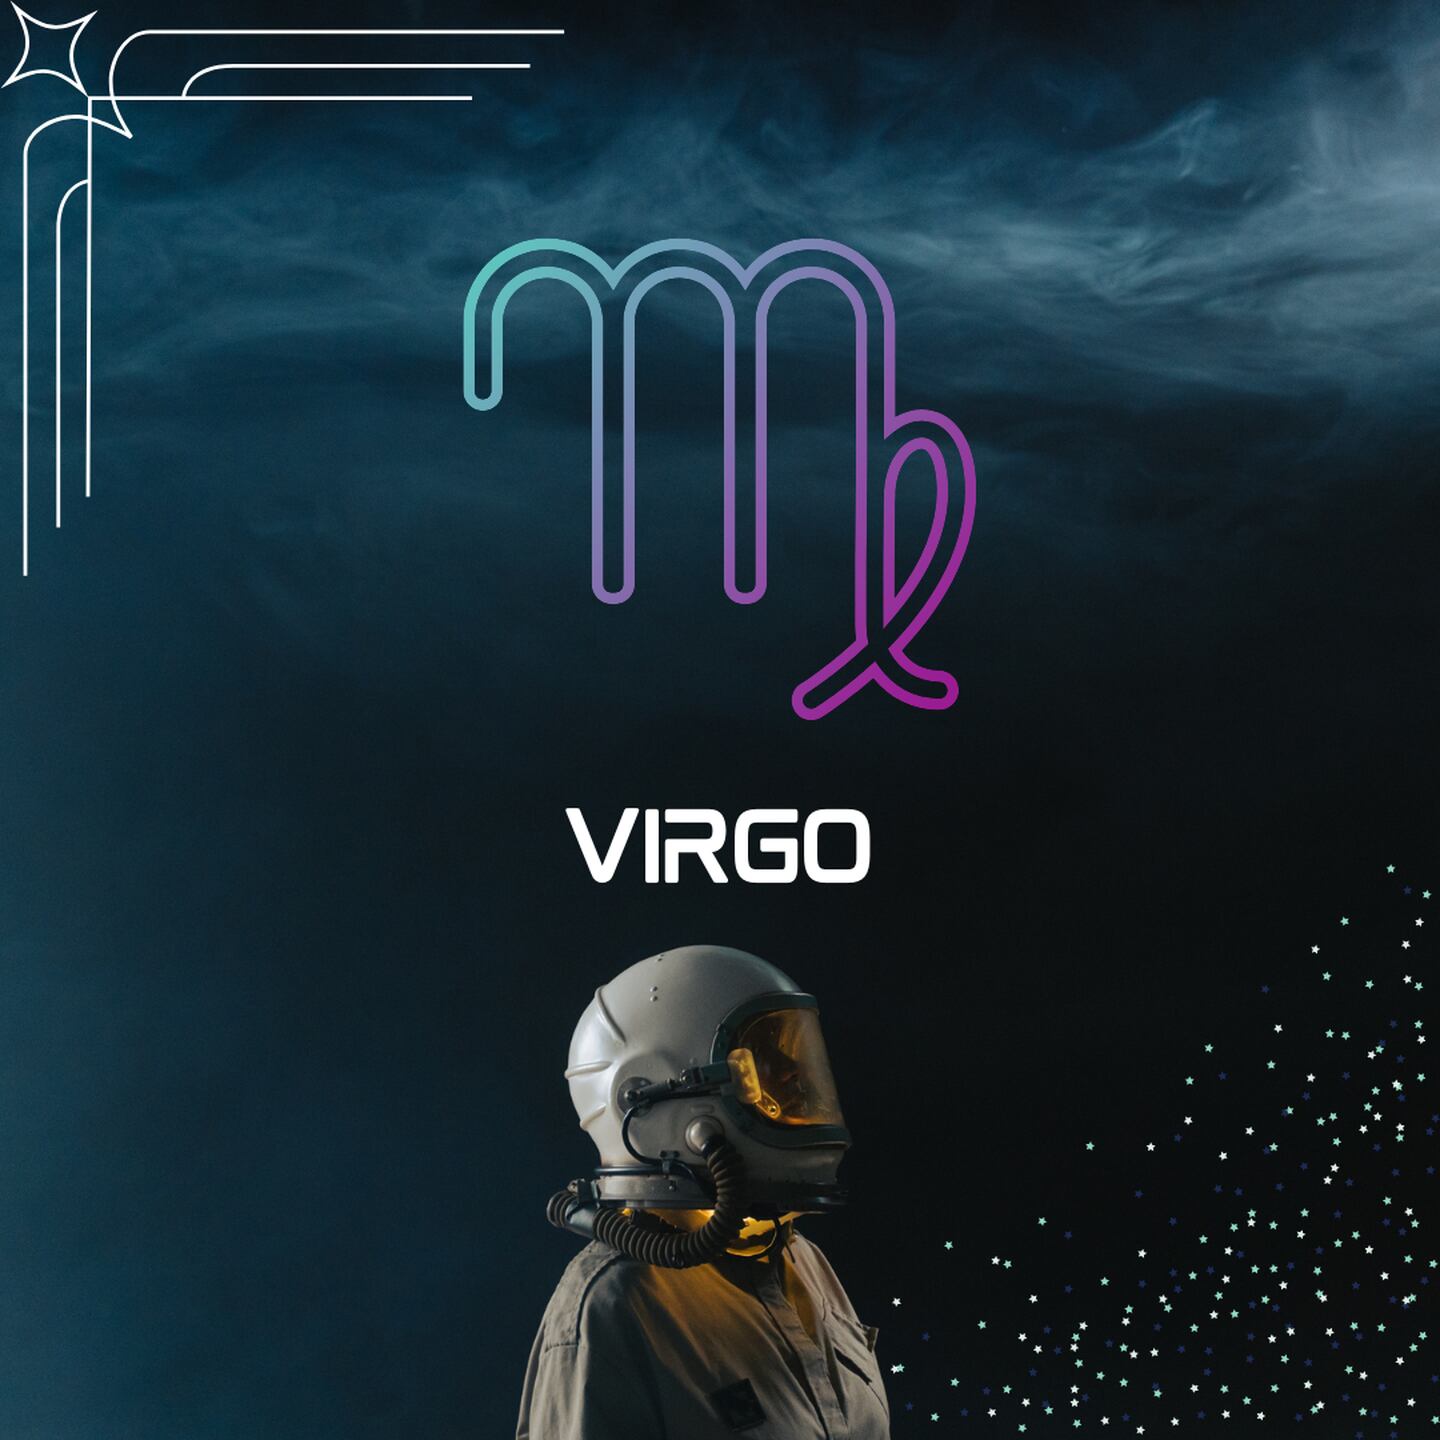 Sobre un fondo oscuro, con humo en la parte superior, aparece el símbolo de Virgo. Al centro aparece el nombre del signo en color blanco y todavía más abajo, un astronauta está mirando hacia la derecha.